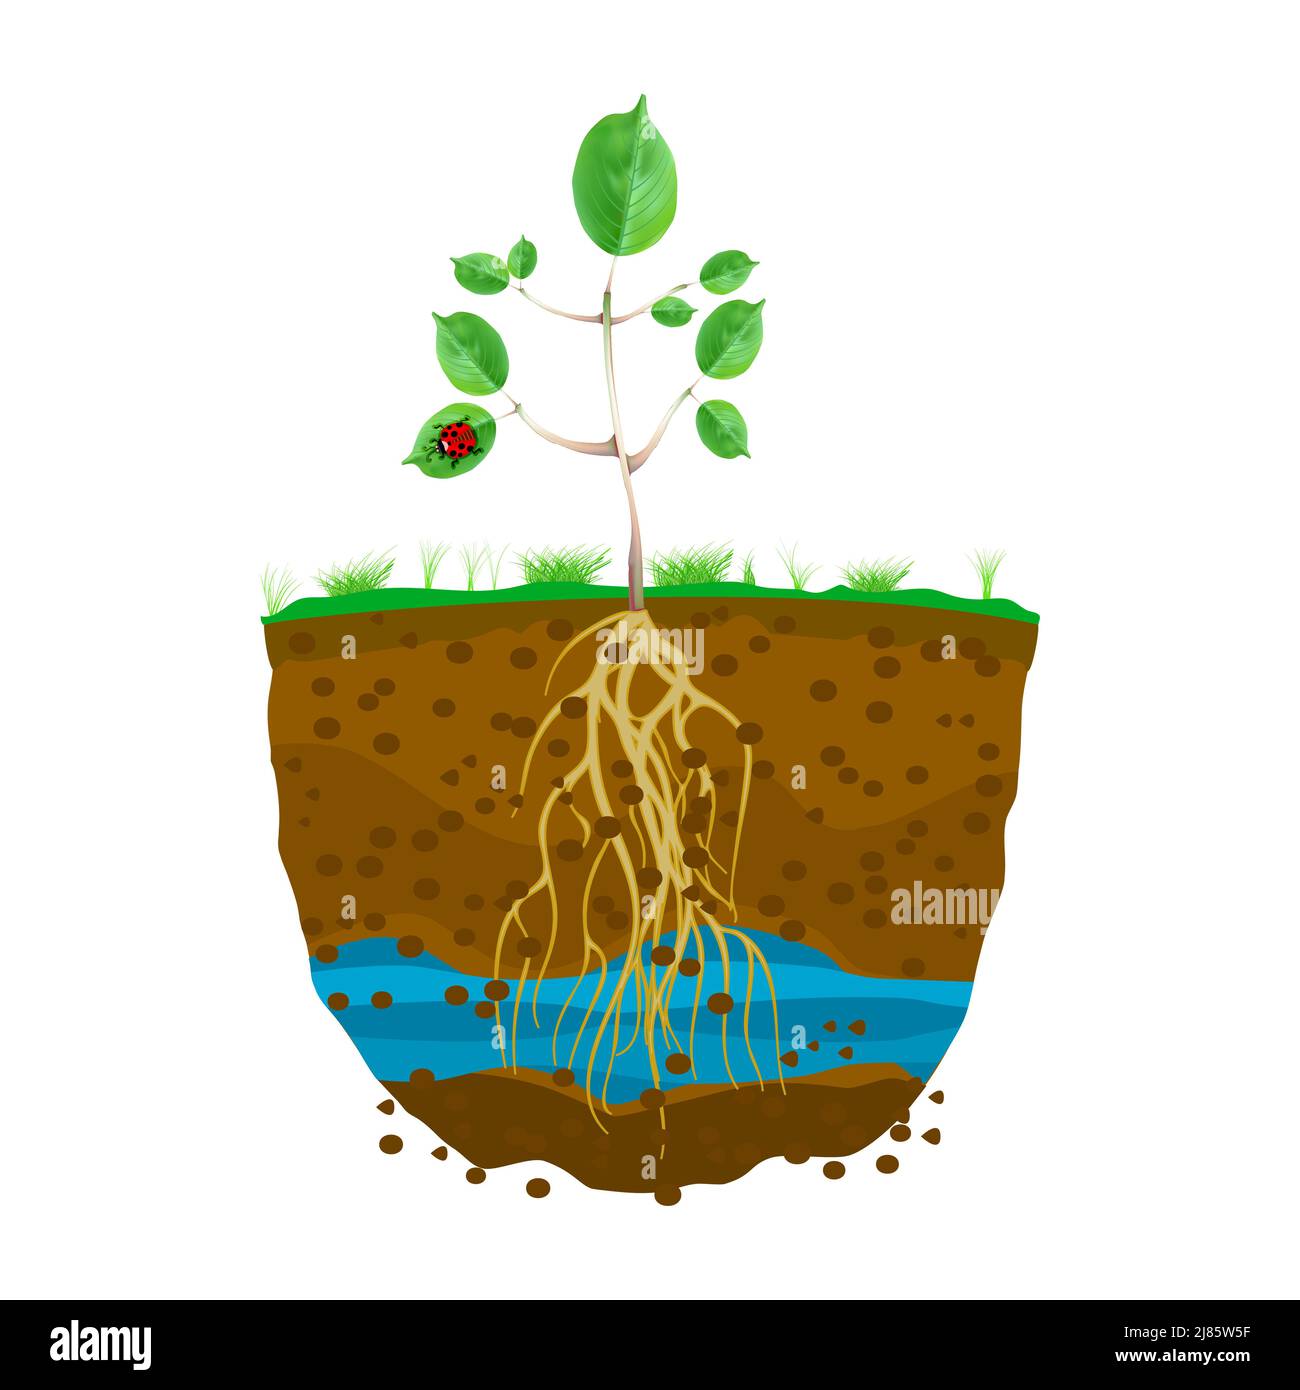 Sprießen mit Wurzelsystem im Boden. Junge grüne Pflanze mit starken Wurzeln. Untergrund mit Schmutzschichten, Wasser und Wurzel. Schnittquerschnitt der geschliffenen Schicht. Vektor Stock Vektor